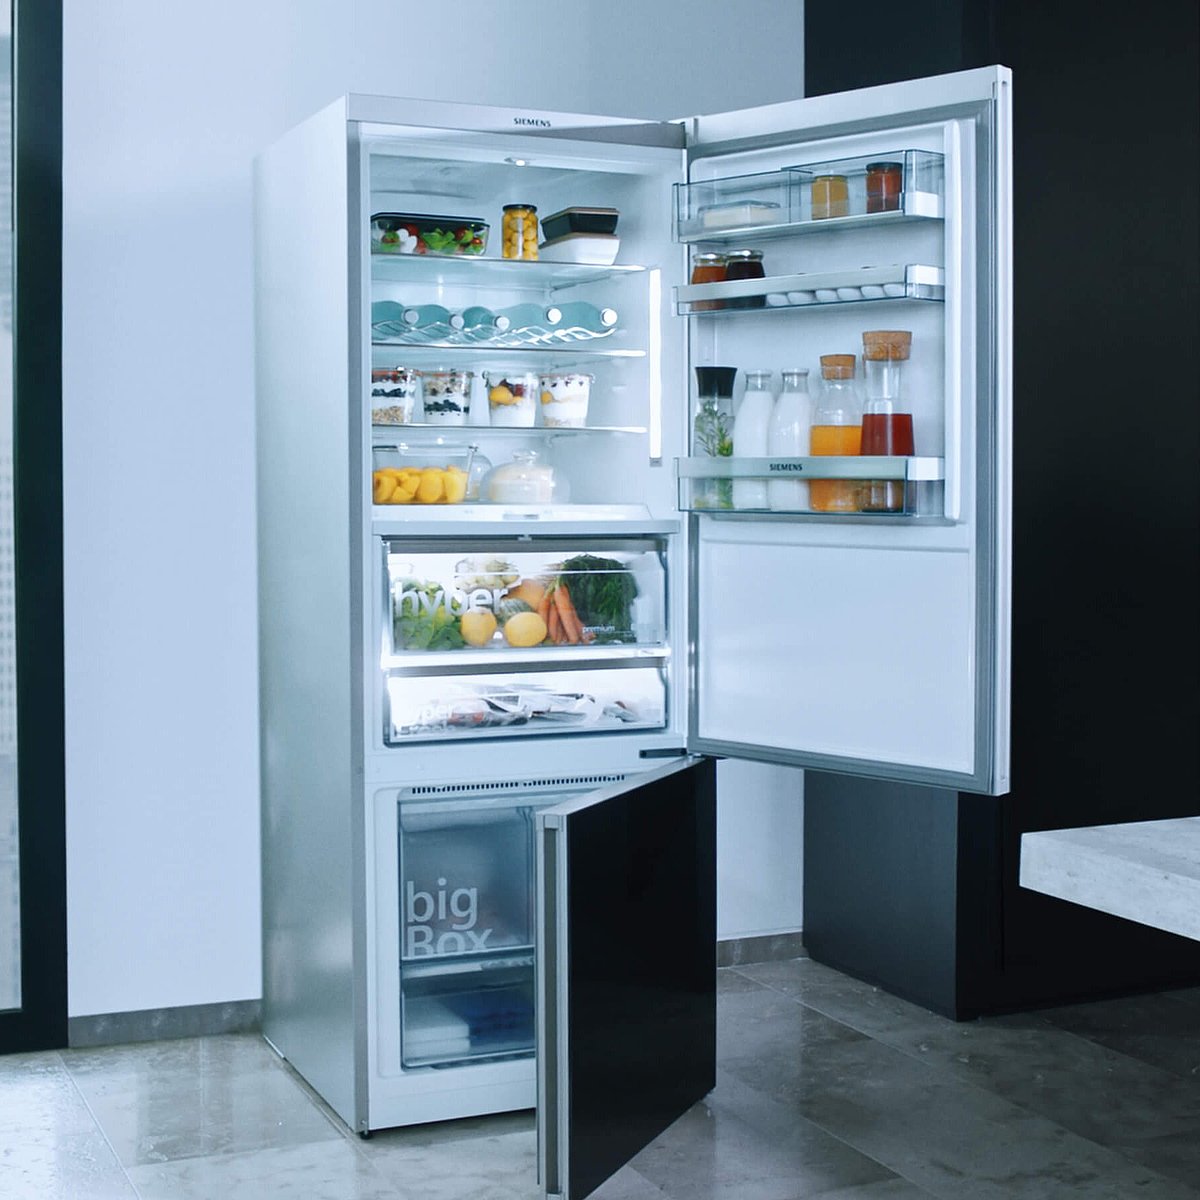 gefüllter Kühlschrank mit geöffneten Türen und Gefrierfach